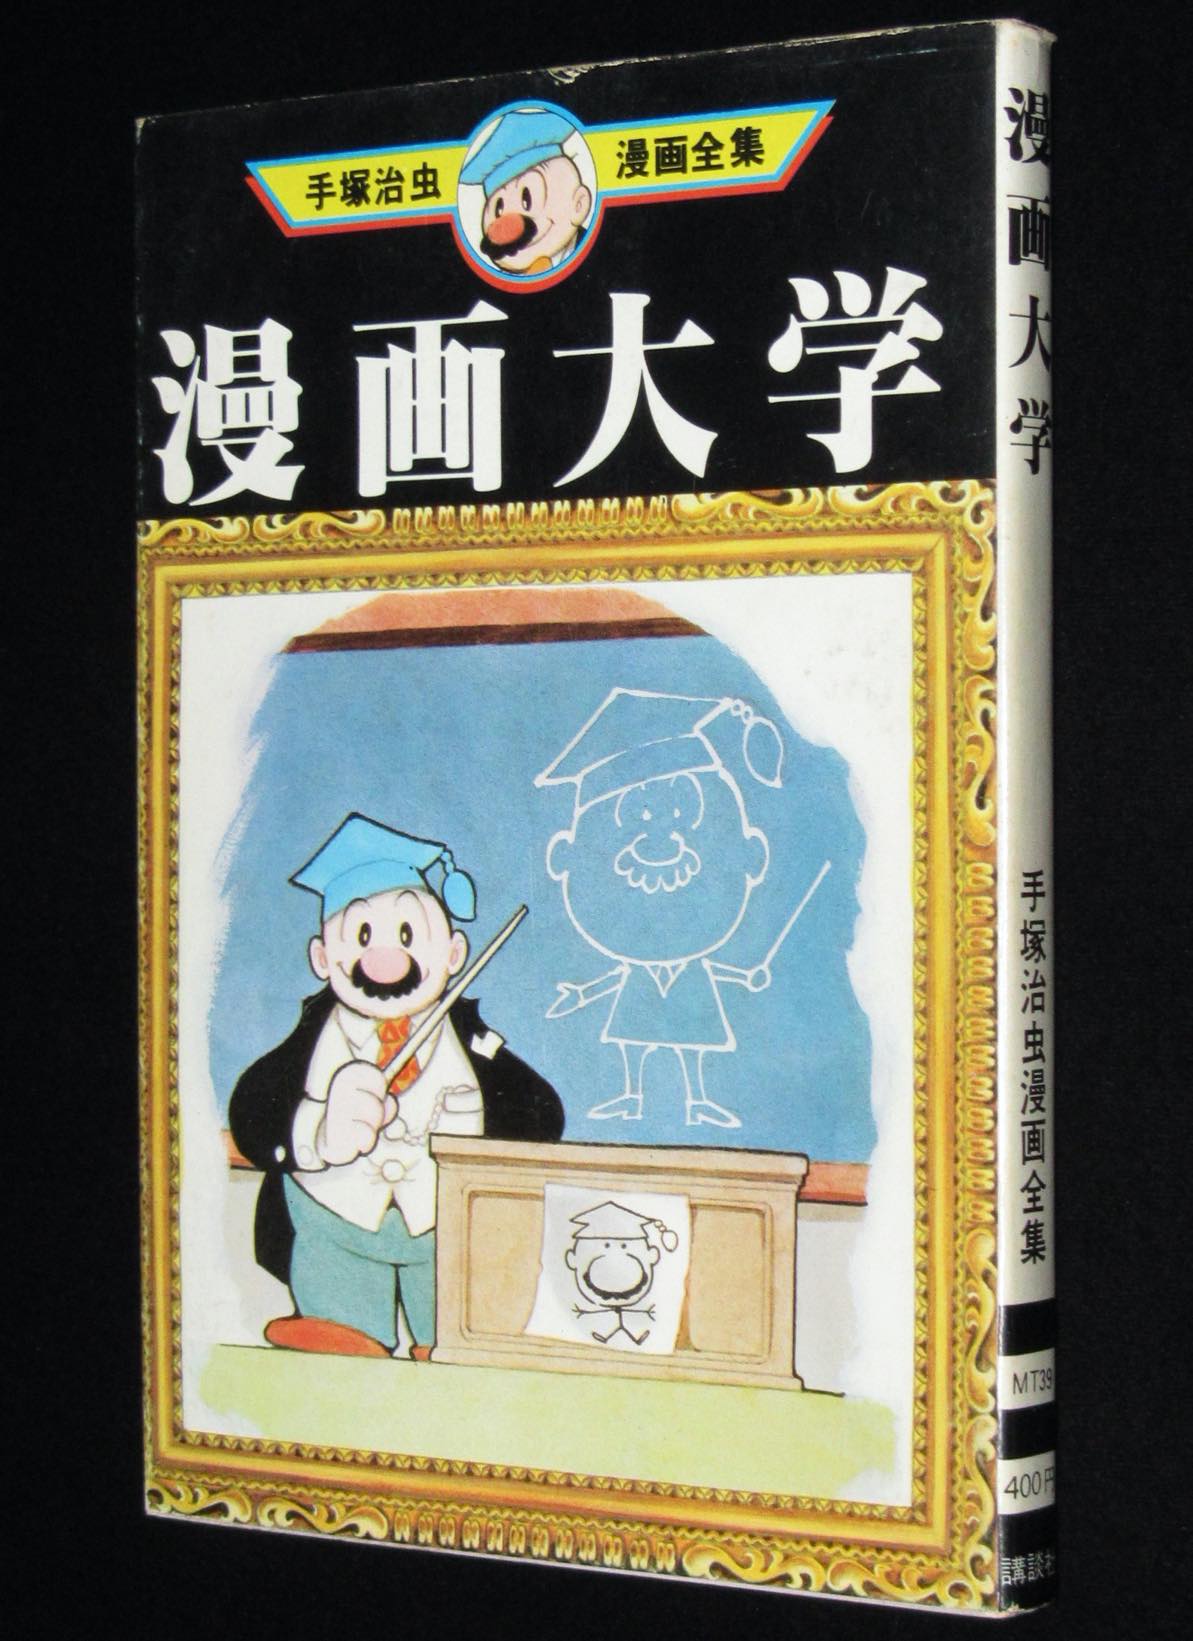 手塚治虫漫画全集 漫画大学 講談社 1977年11月初版 絶版漫画専門 じゃんくまうす